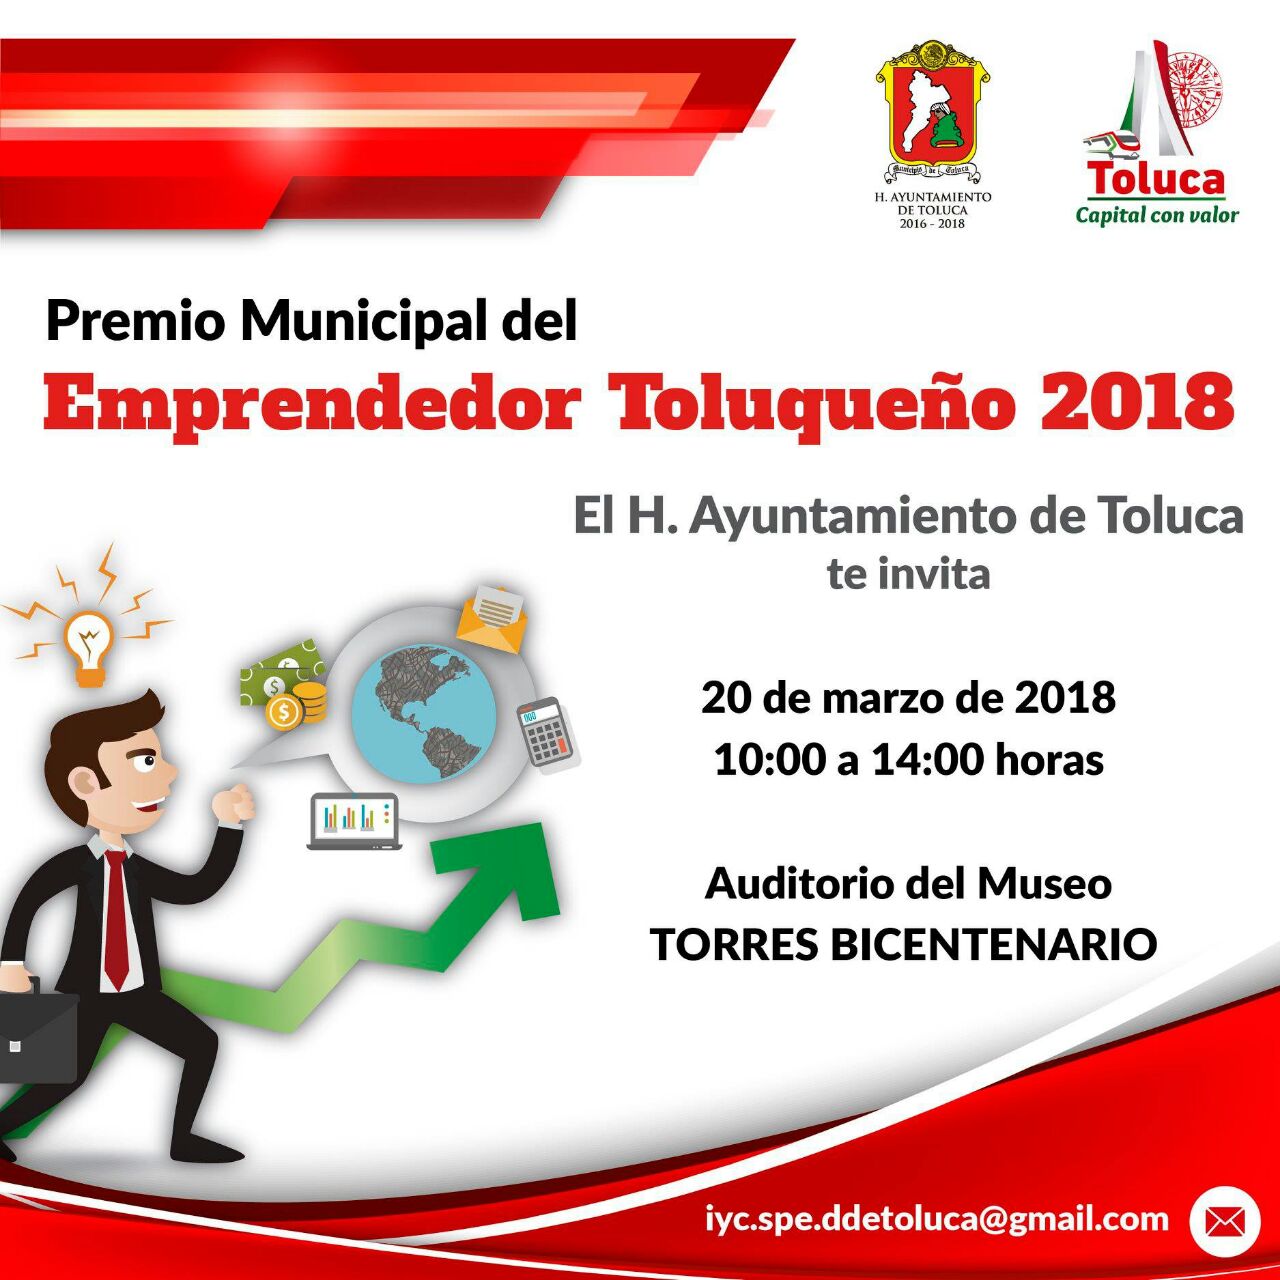 Invitan a participar en el Premio Municipal del Emprendedor Toluqueño 2018